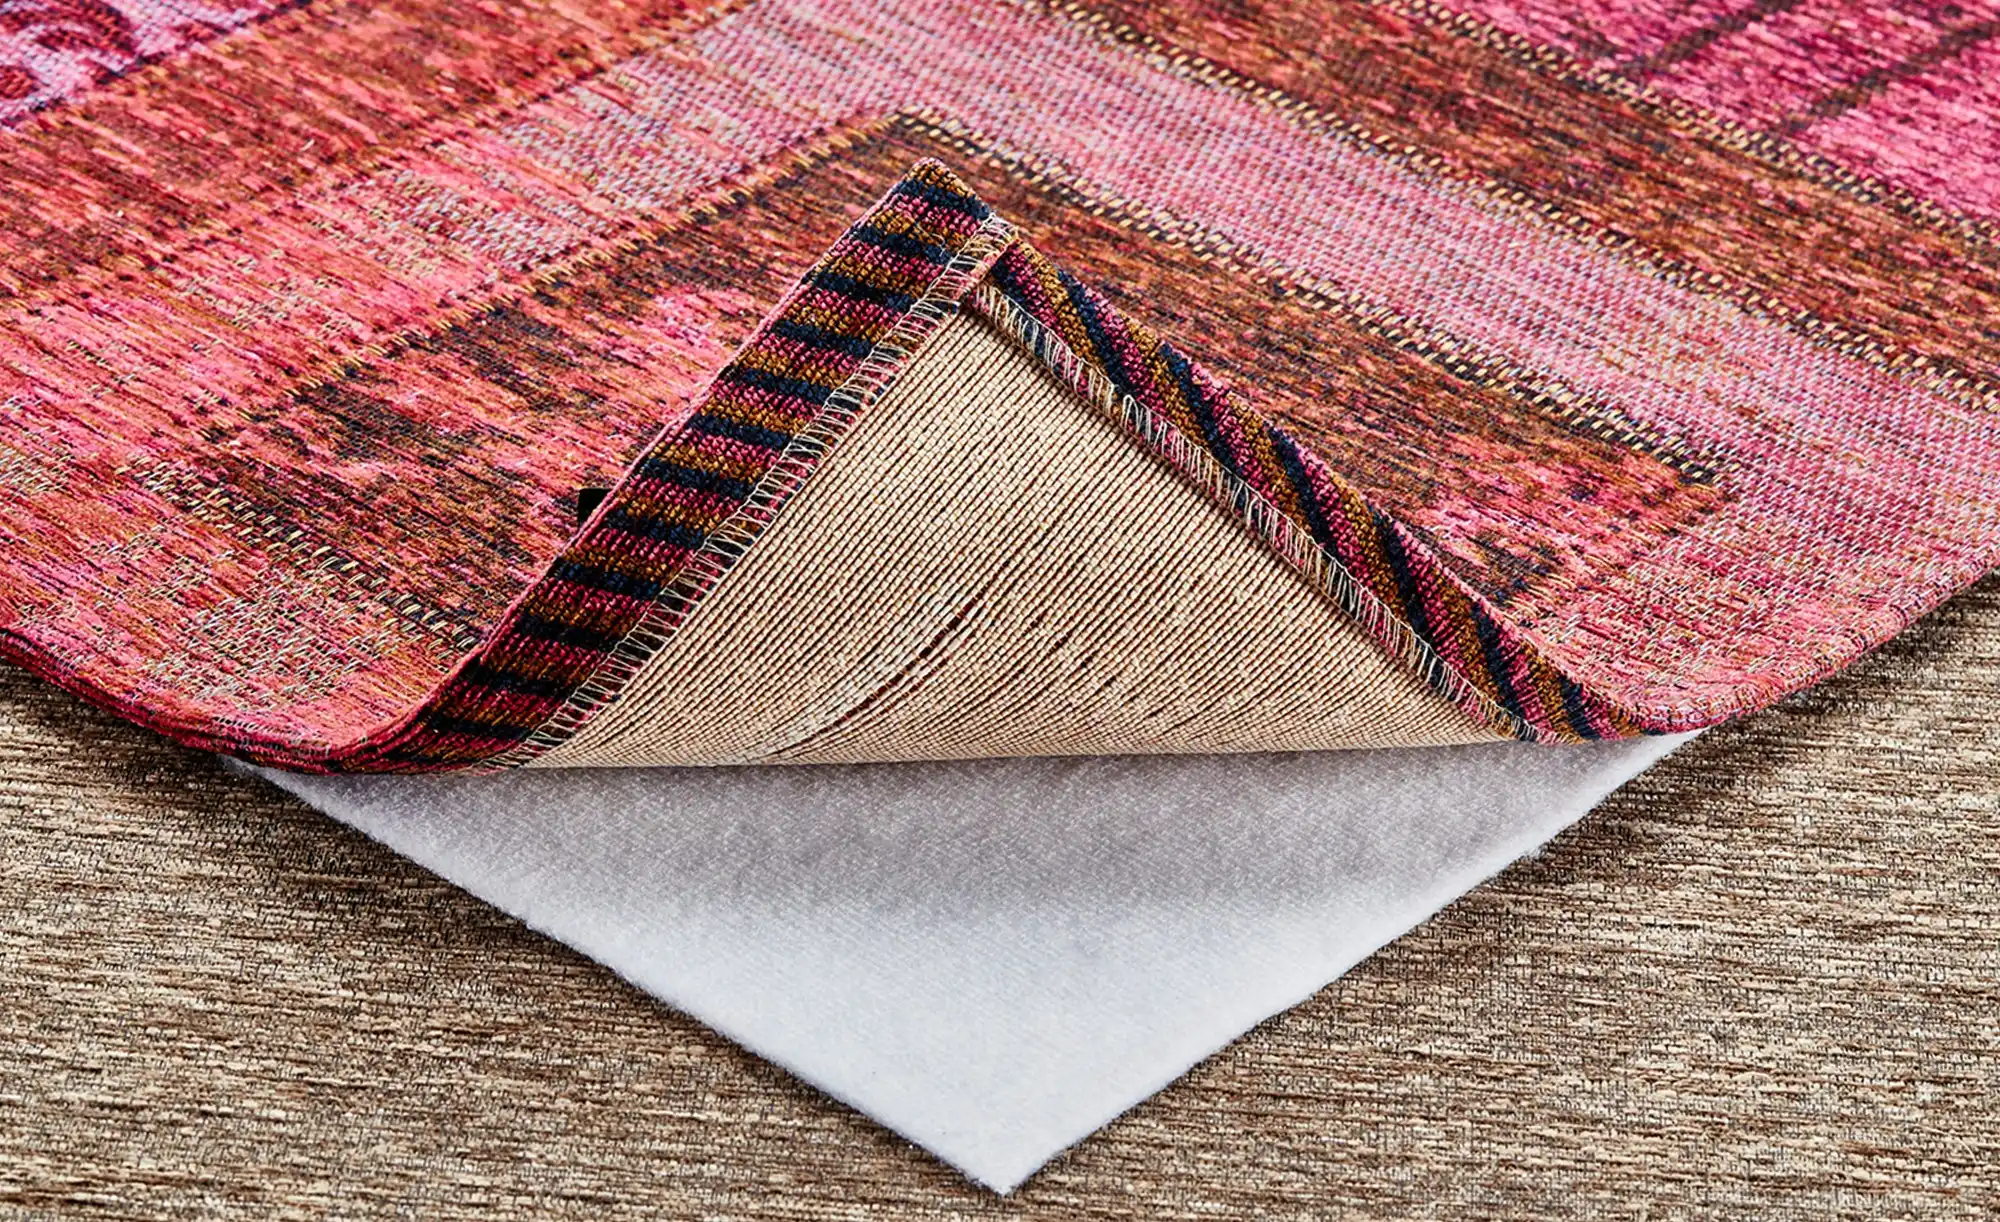 Ako Teppichunterlage VLIES PLUS für textile und glatte Böden Größe:240x340 cm